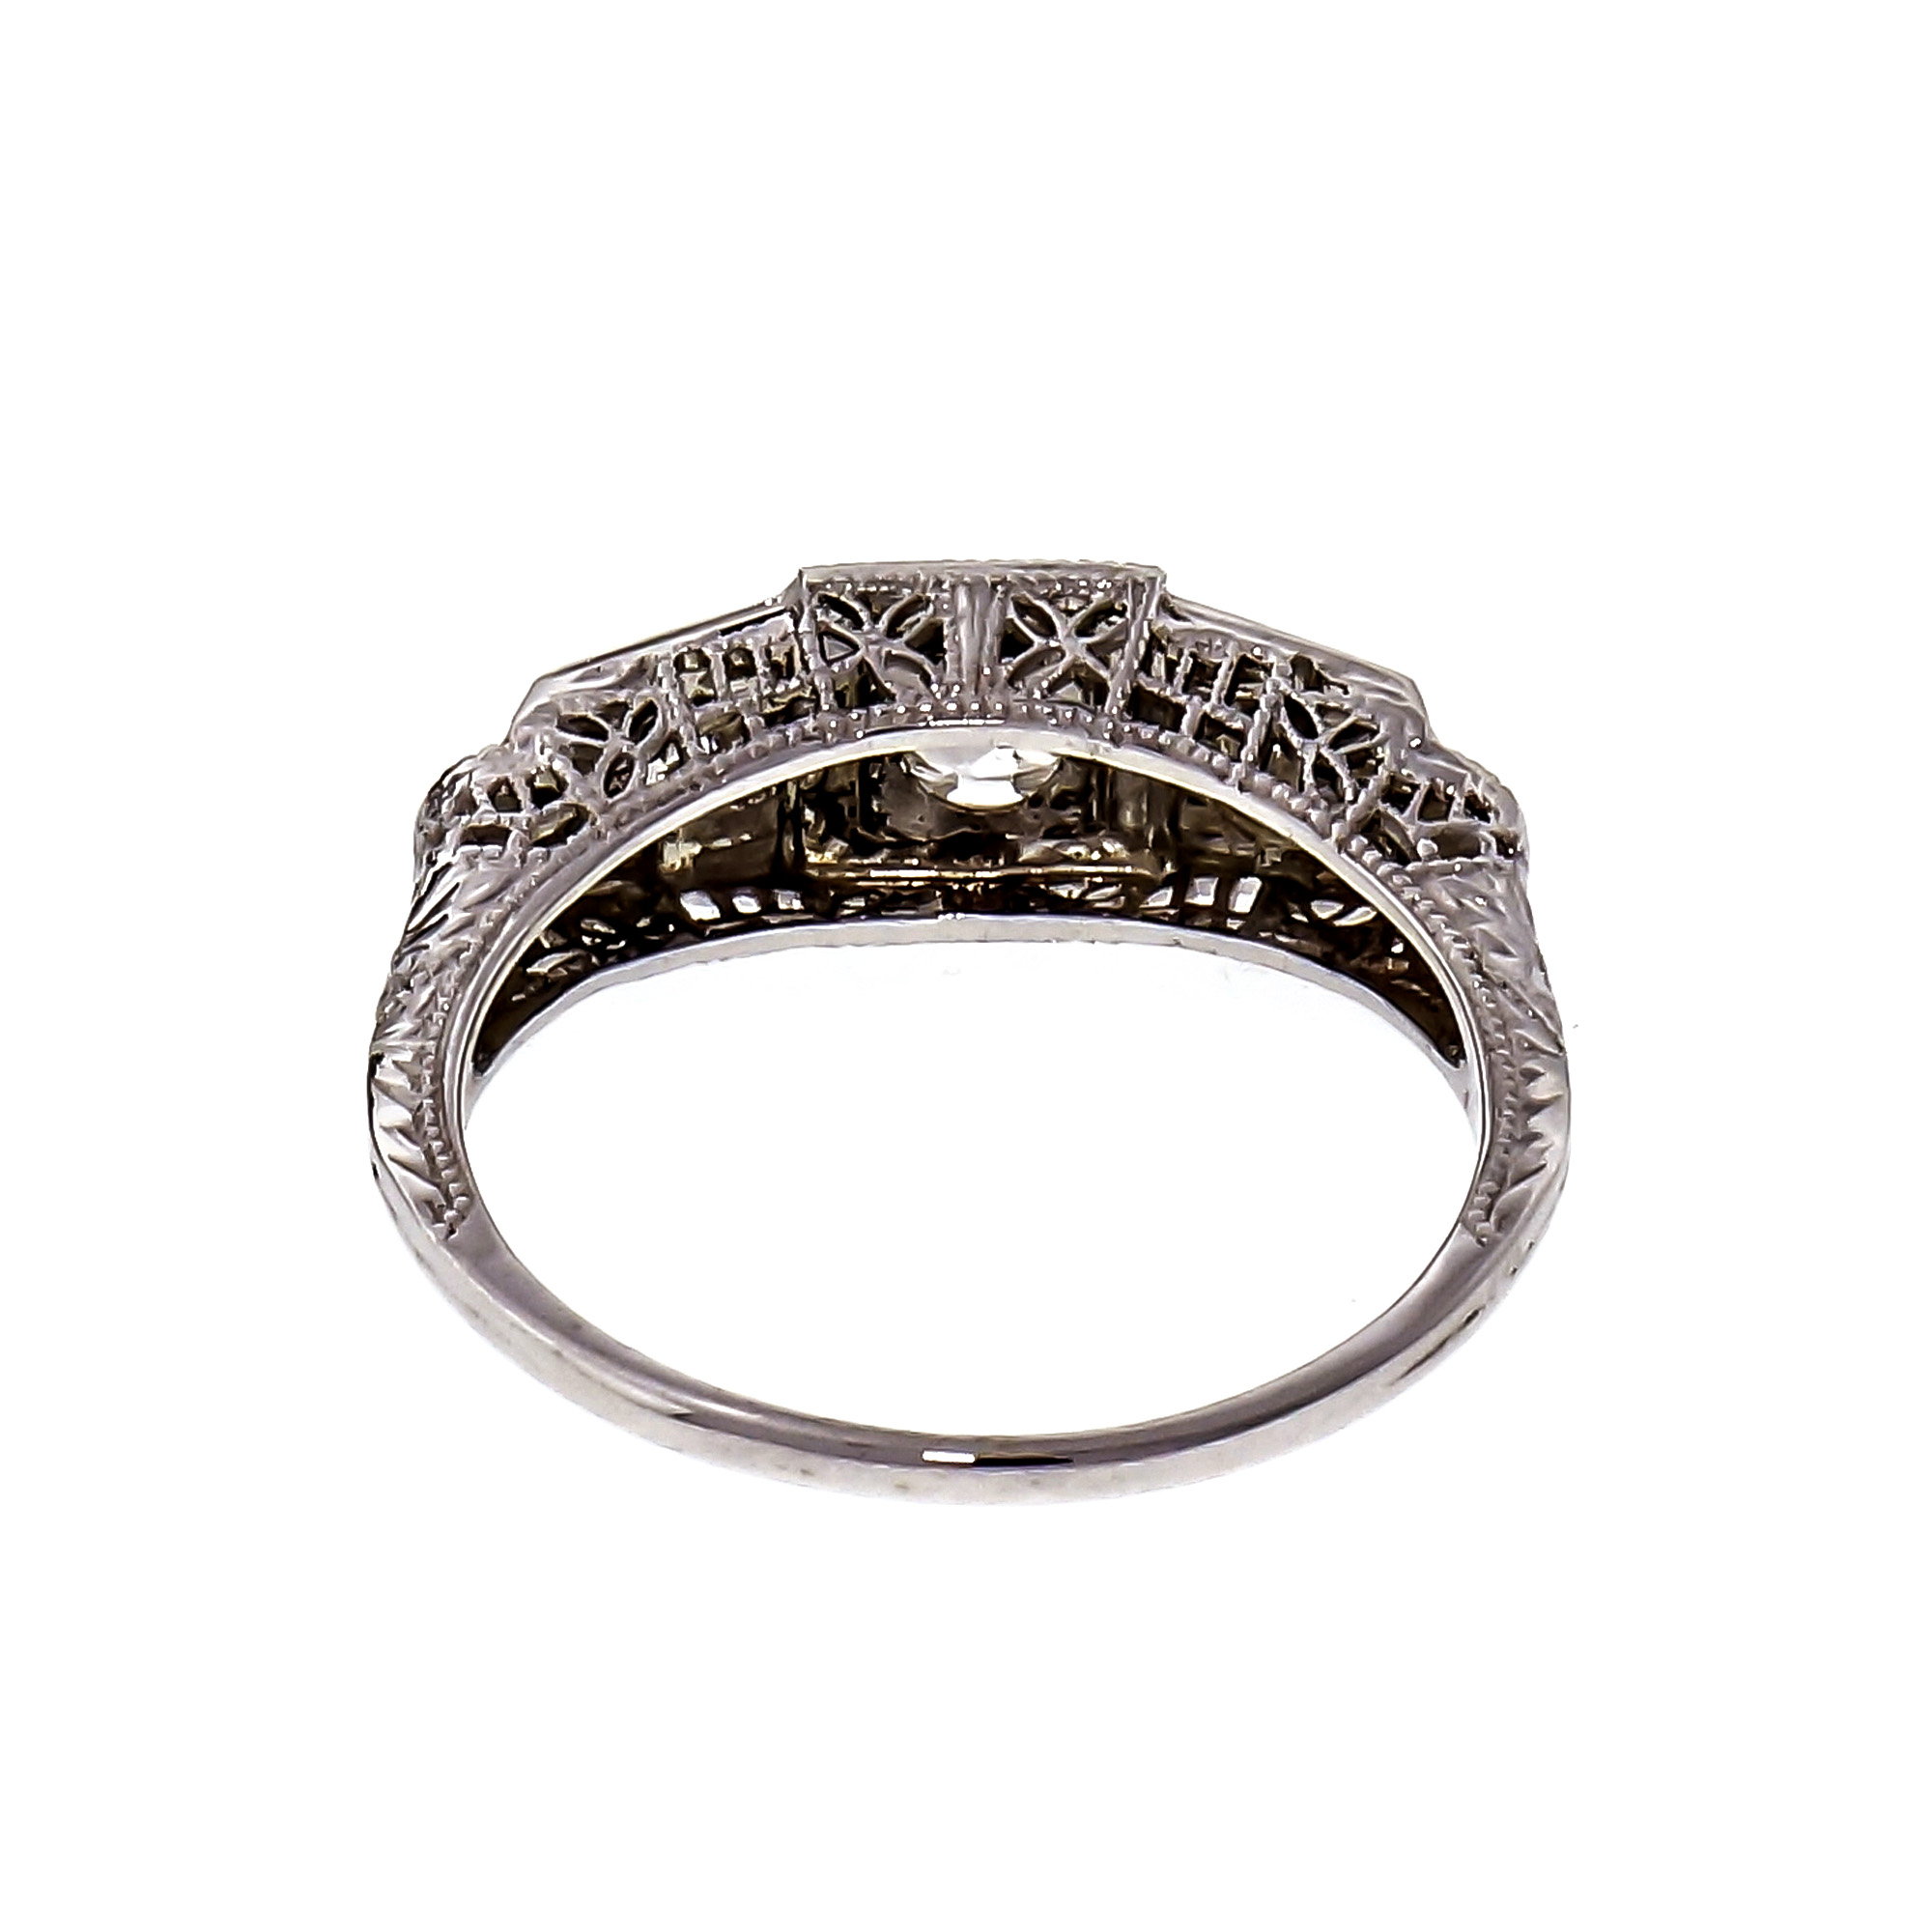 Vintage Art Deco Filigree Diamond Engagement Ring 18k White Gold | eBay